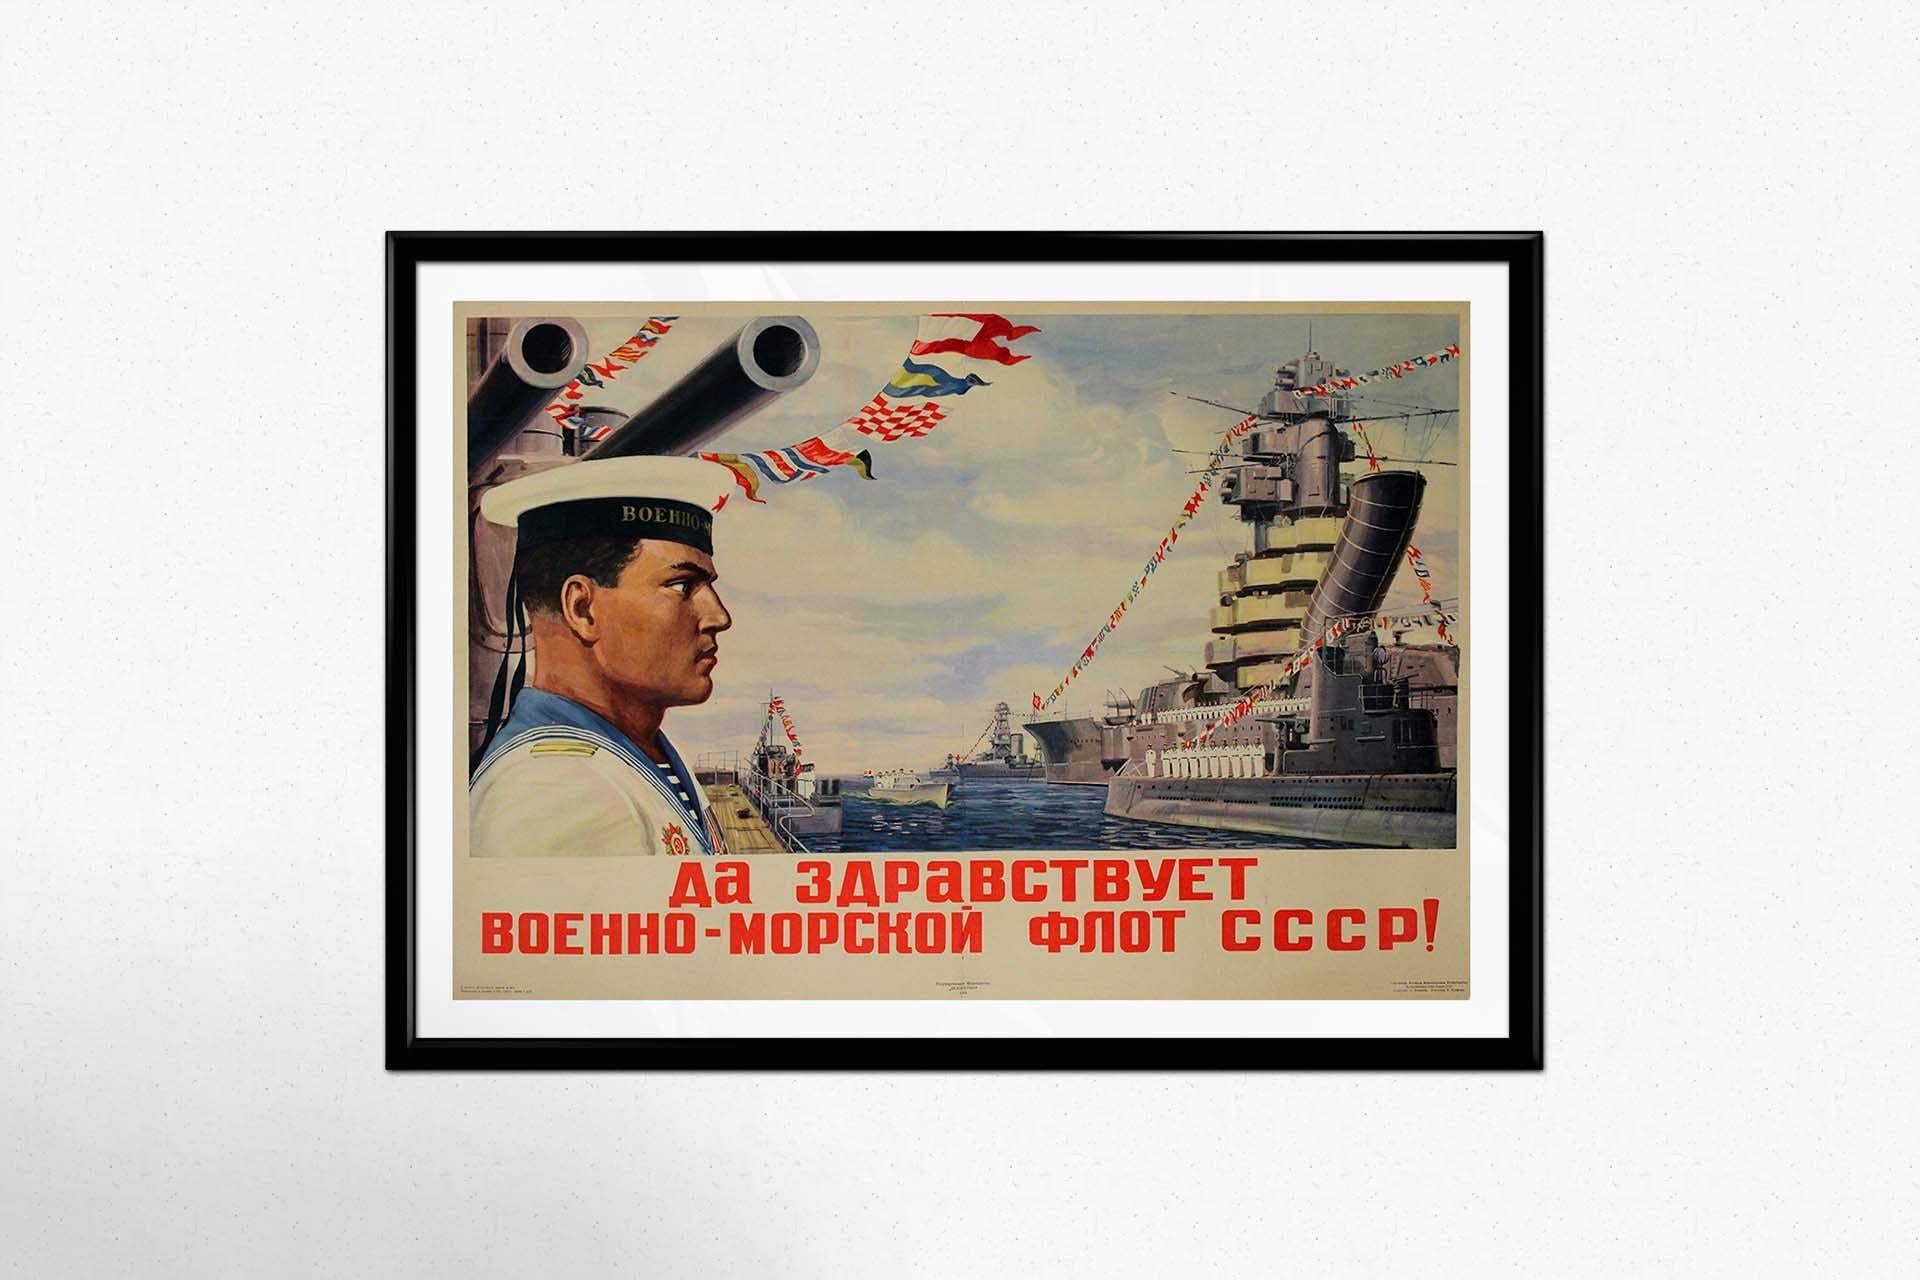 L'affiche de propagande soviétique originale de 1946 intitulée 